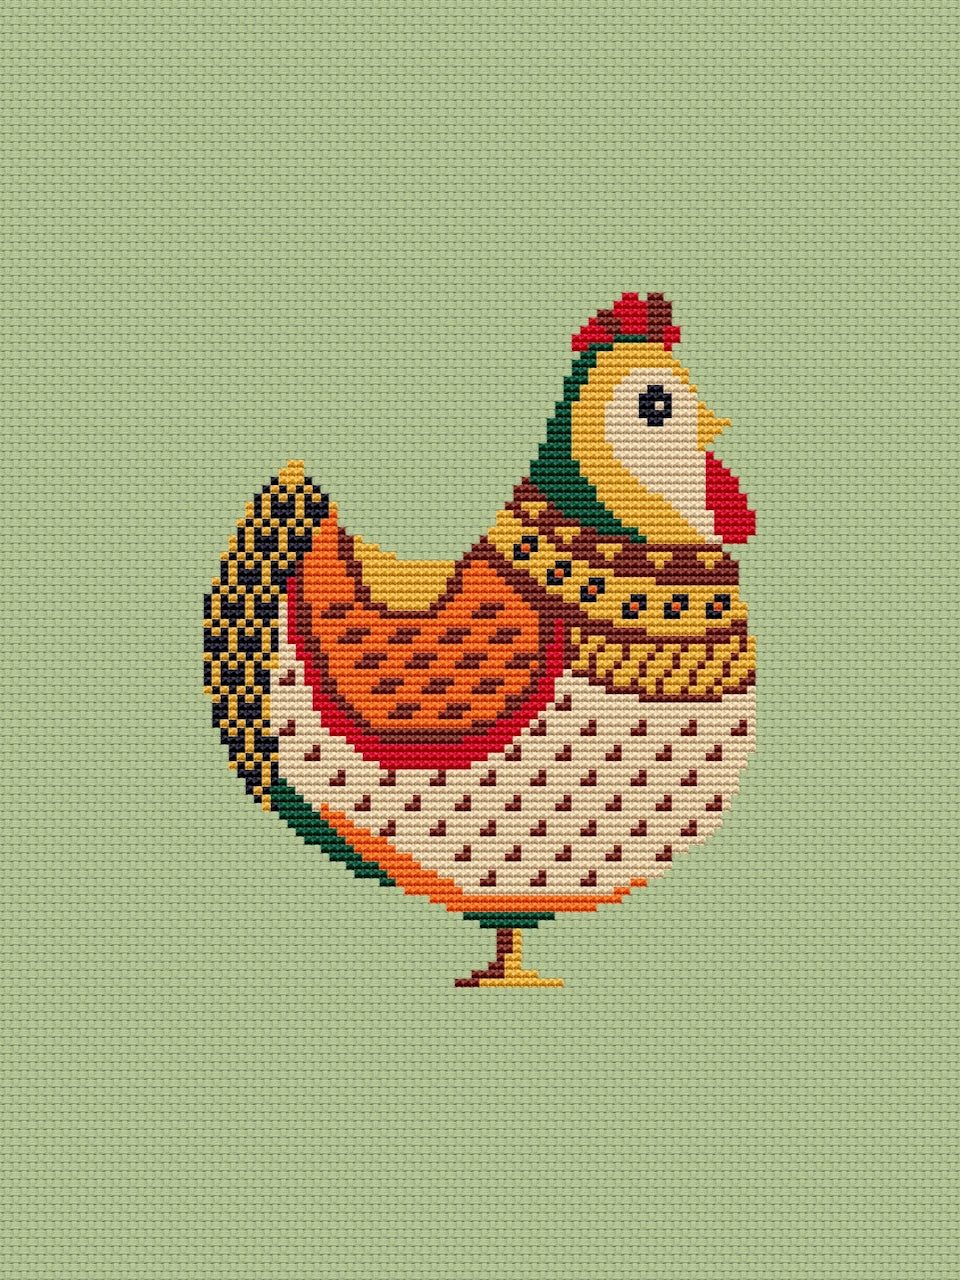 Chicken - cross stitch pattern